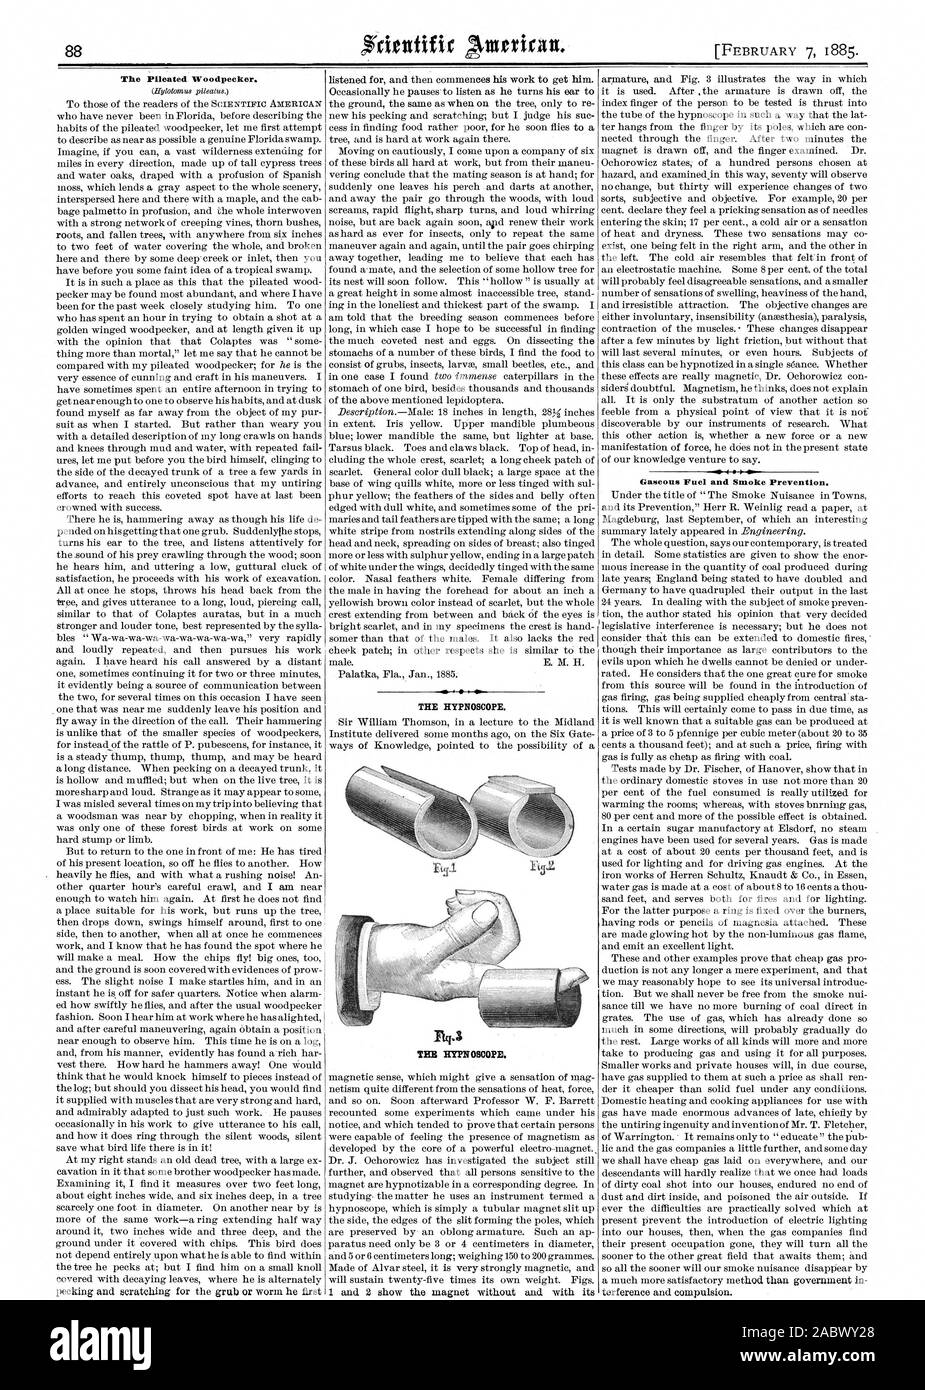 Le Grand Pic. Le HYENOSCOPE. Le carburant gazeux et de la fumée la prévention. Électrochirurgie et contrainte. THEI. HYPEOSCOPE, Scientific American, 1885-02-07 Banque D'Images